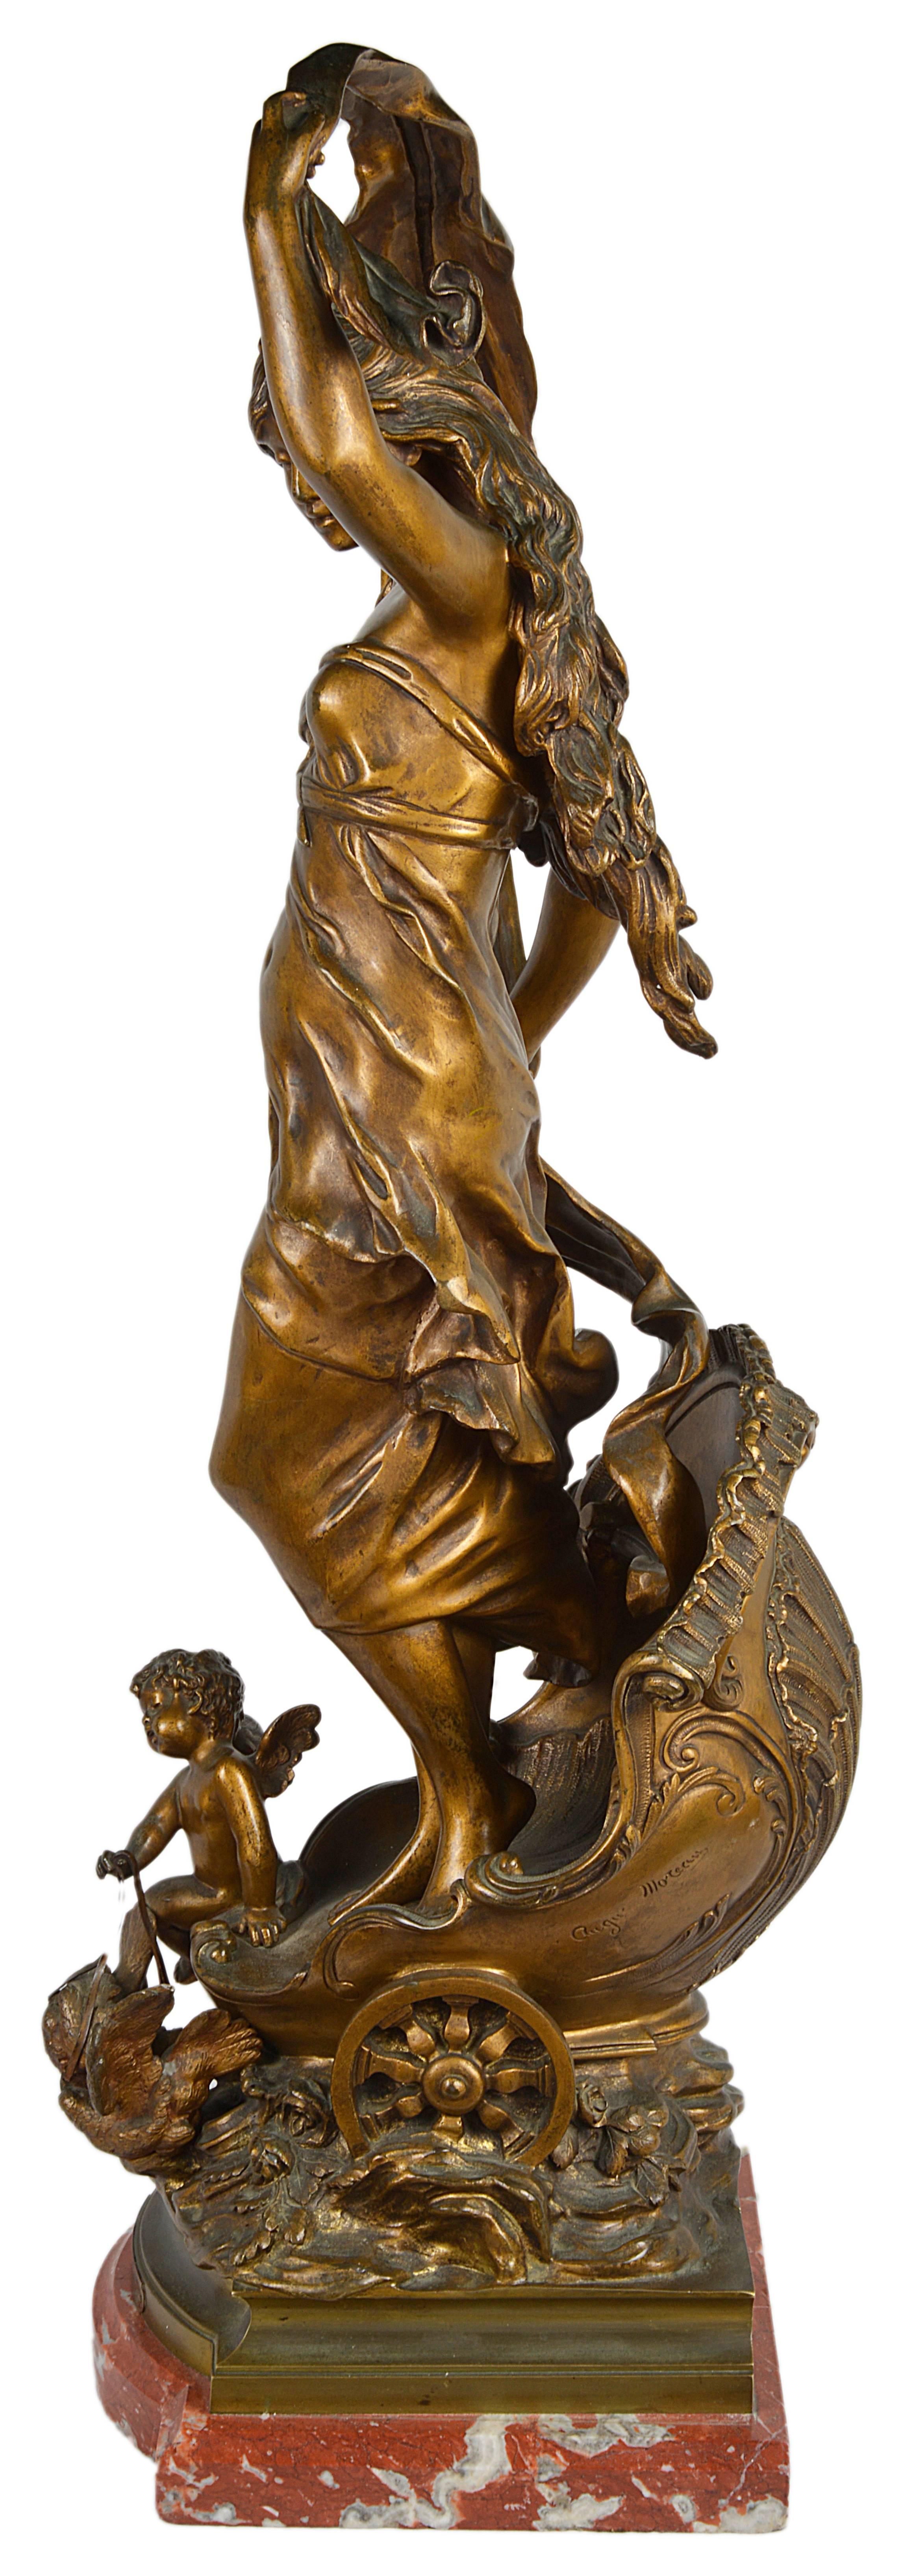 Le Chariot d'Aurore. Aurora, Apollo. Aurore est représentée dans son char, accompagnée des heures et annoncée par Apollon ;
Patine dorée. Signé ; Auguste Moreau (1834-1917) était un célèbre sculpteur français. Il est né en 1834 à Paris. Il était le